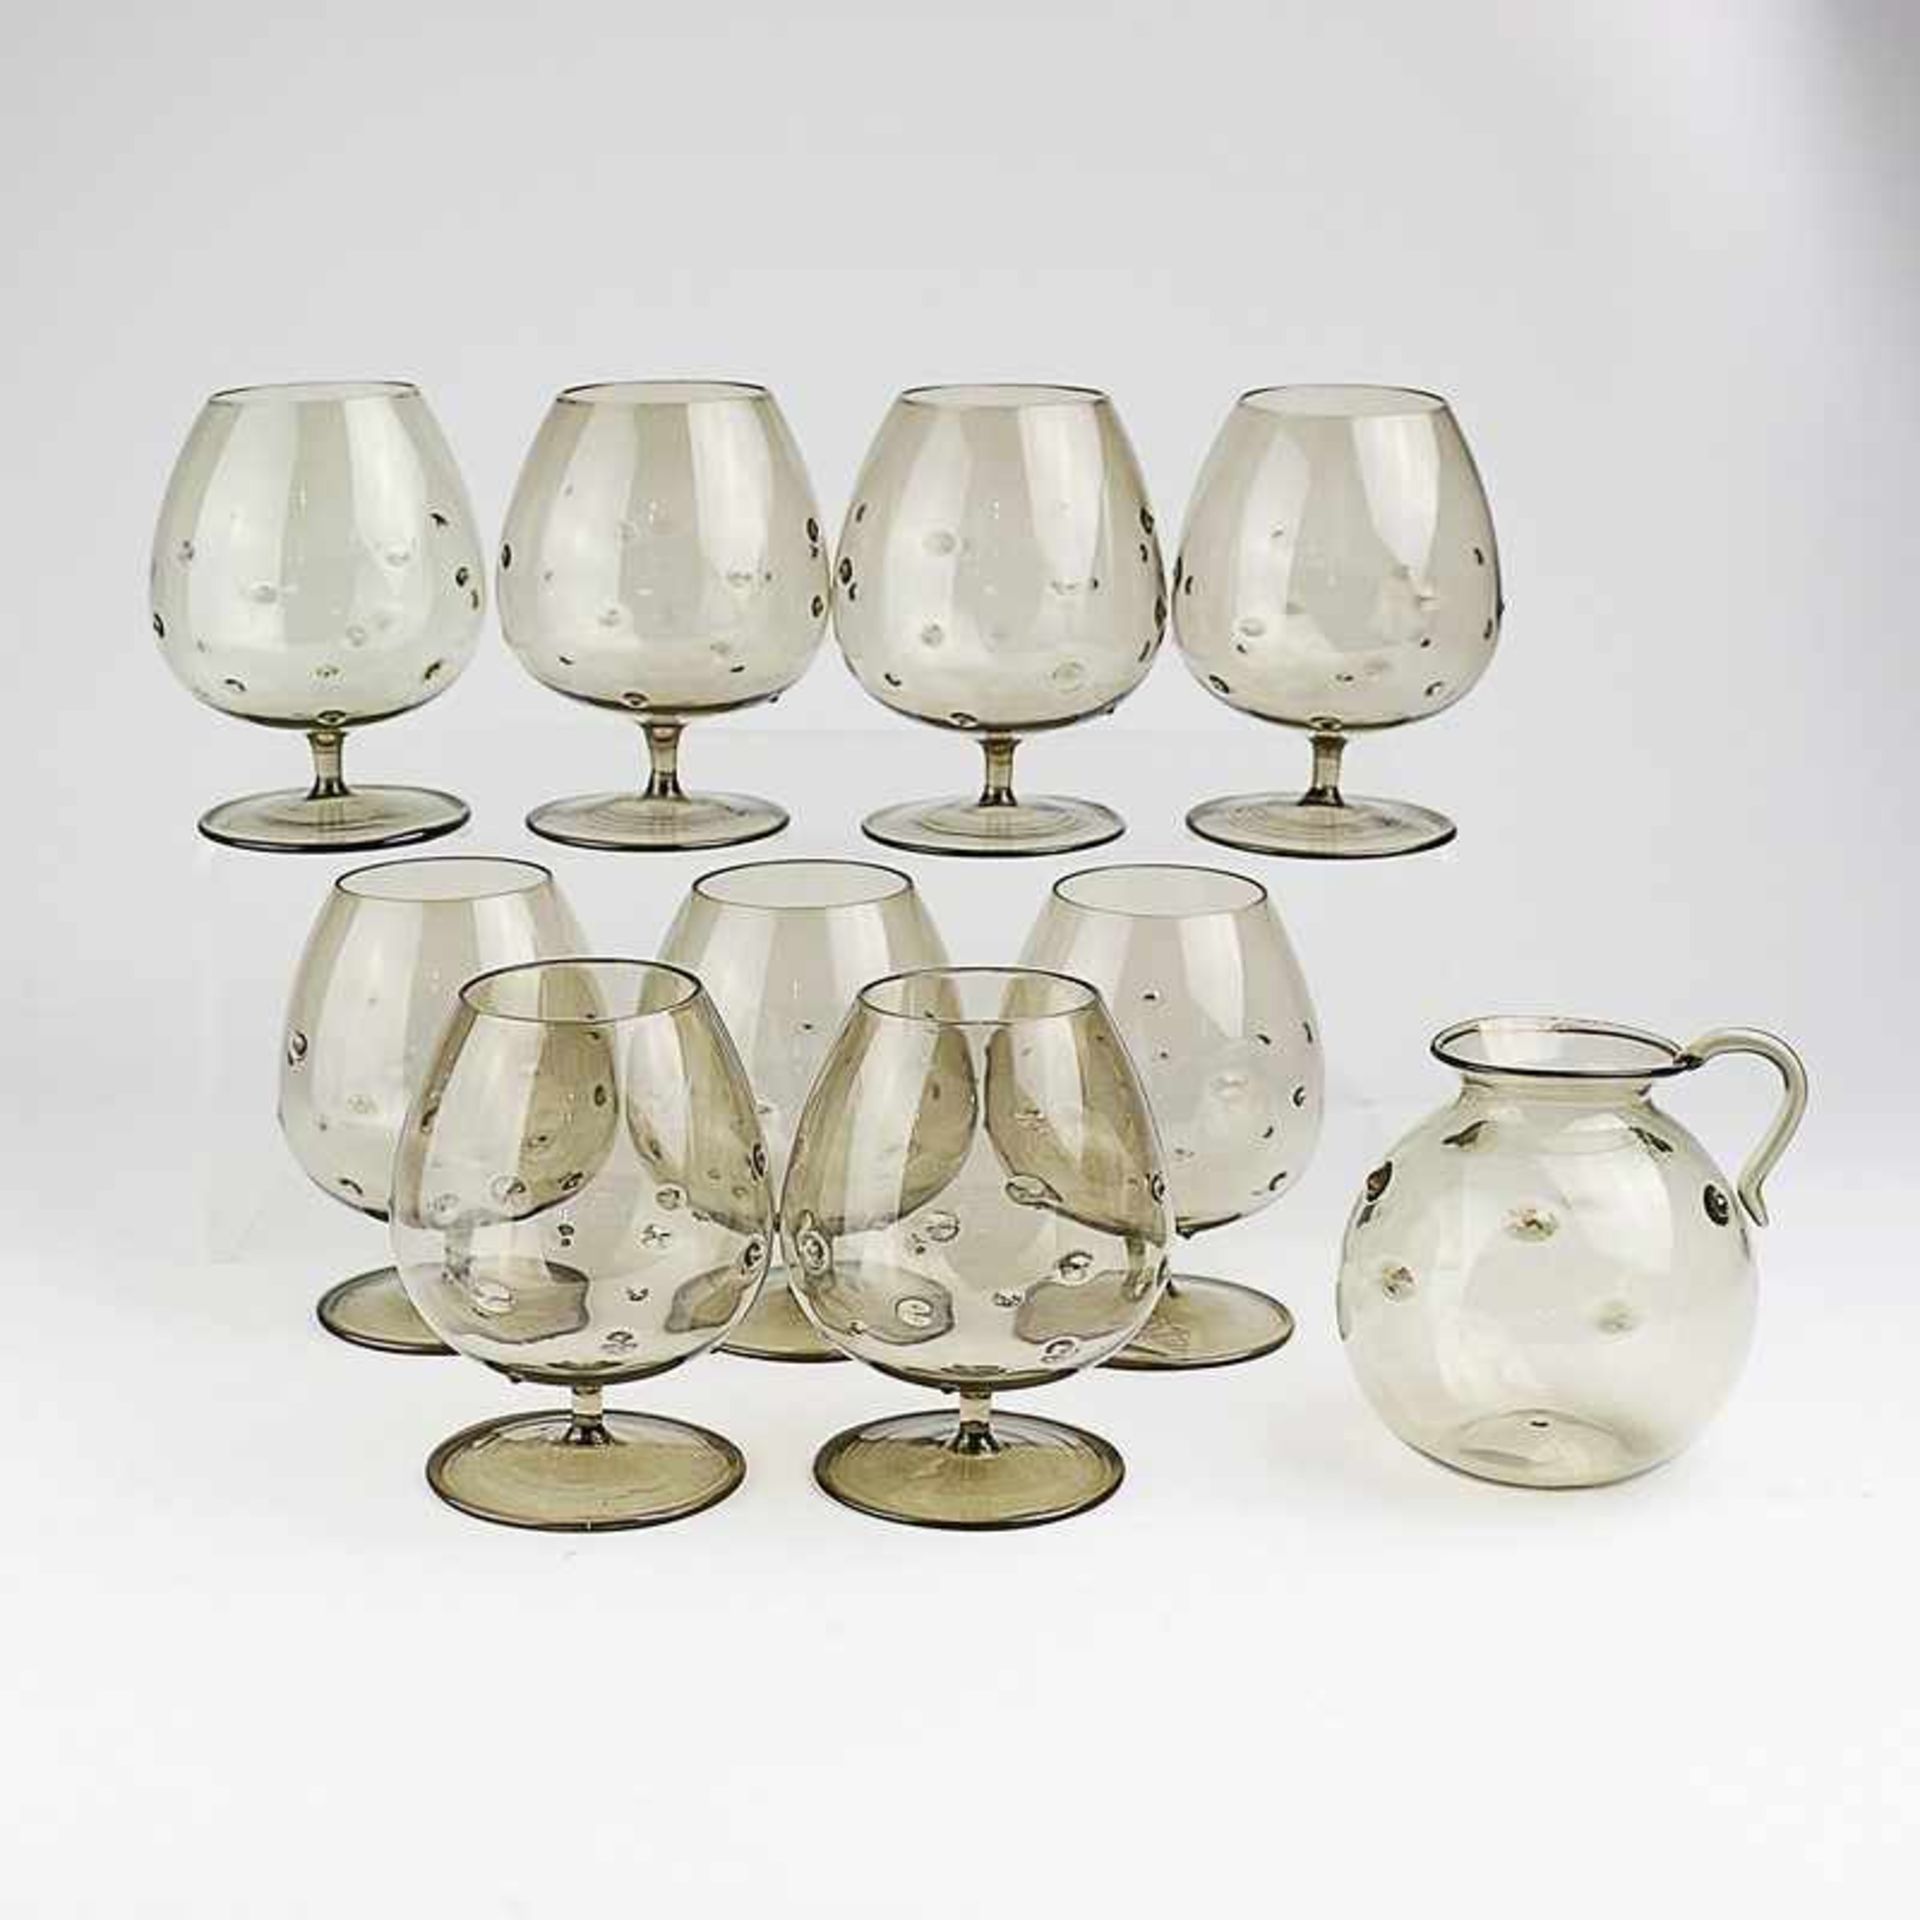 Cognacgläser 10 St., kleine Kanne m. 9 Gläsern, olivgrünes Glas, runder Stand, dünner kurzer Schaft,